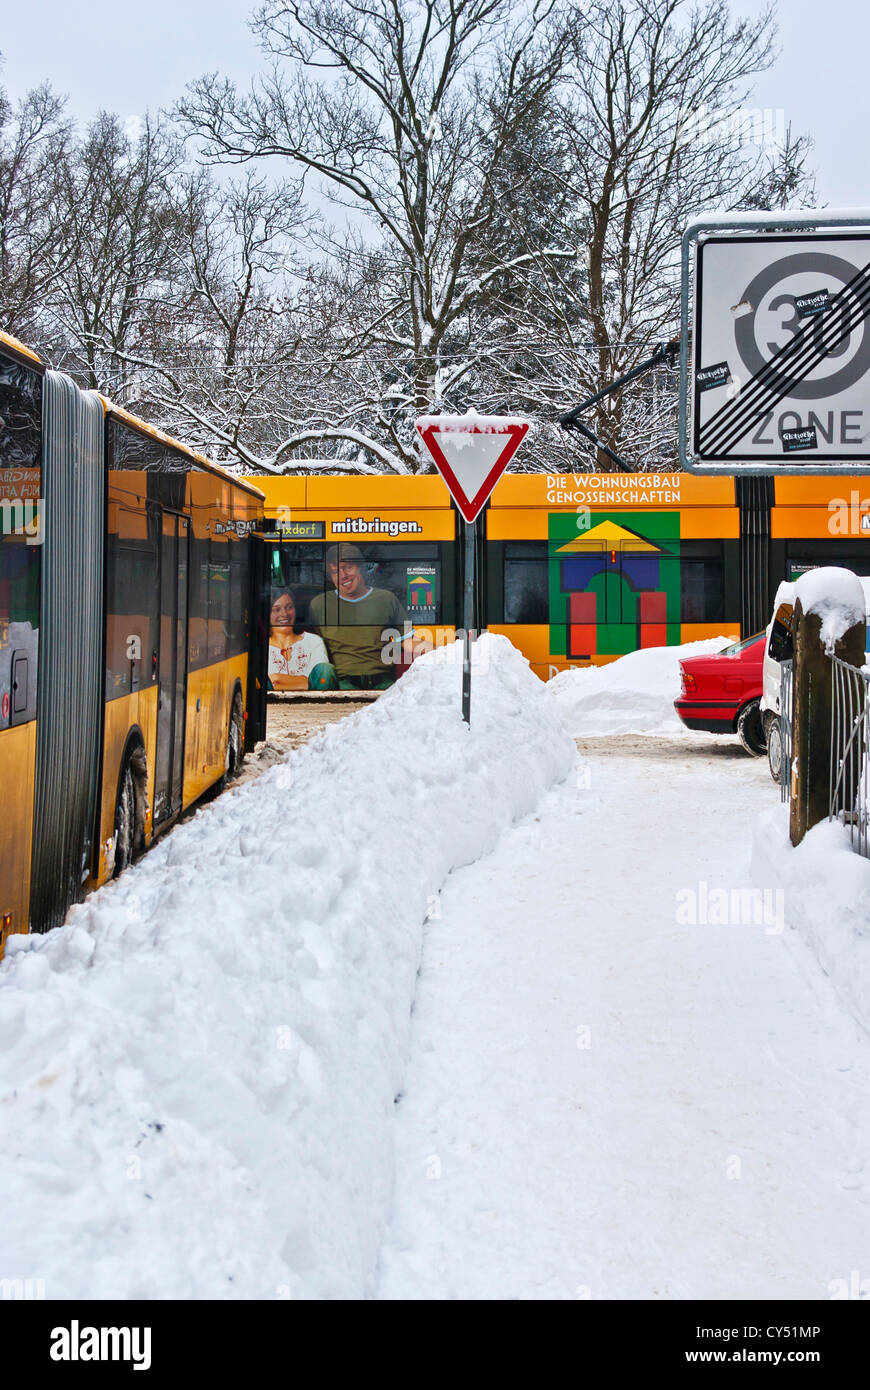 Fonctionne sur les rails du tramway dans un chaos de la circulation en hiver, Dresde, Allemagne. Banque D'Images